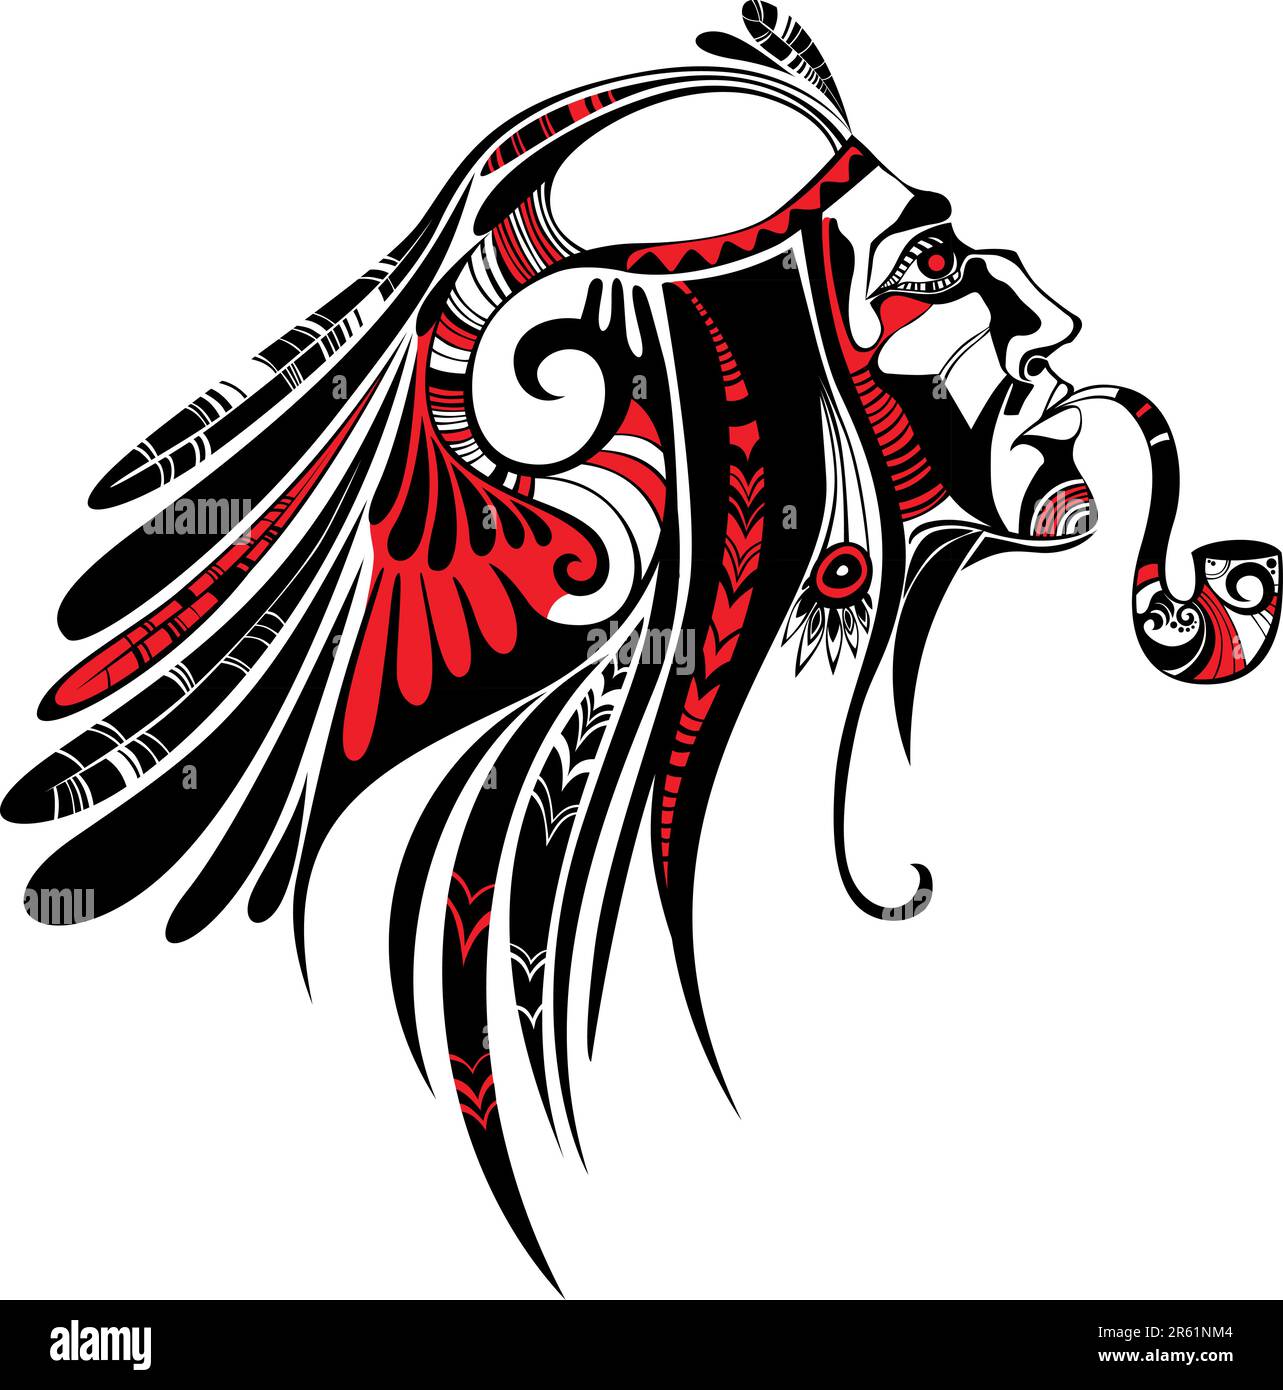 illustration vectorielle d'une culture tribale nord-américaine Illustration de Vecteur